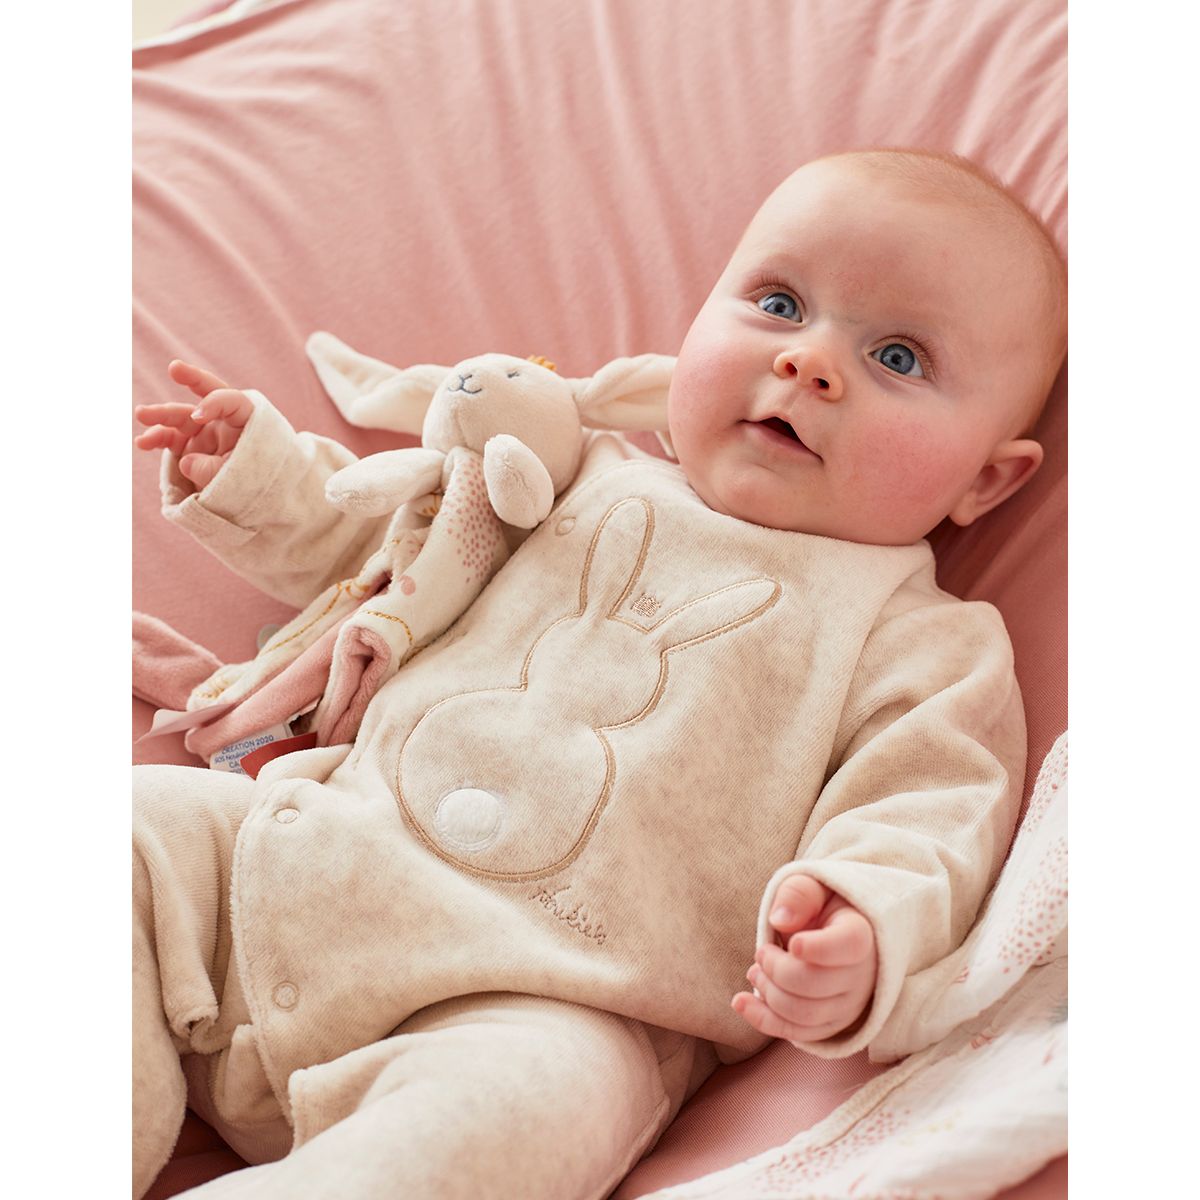 Pyjama bébé fille en velours avec motif lapin gris clair